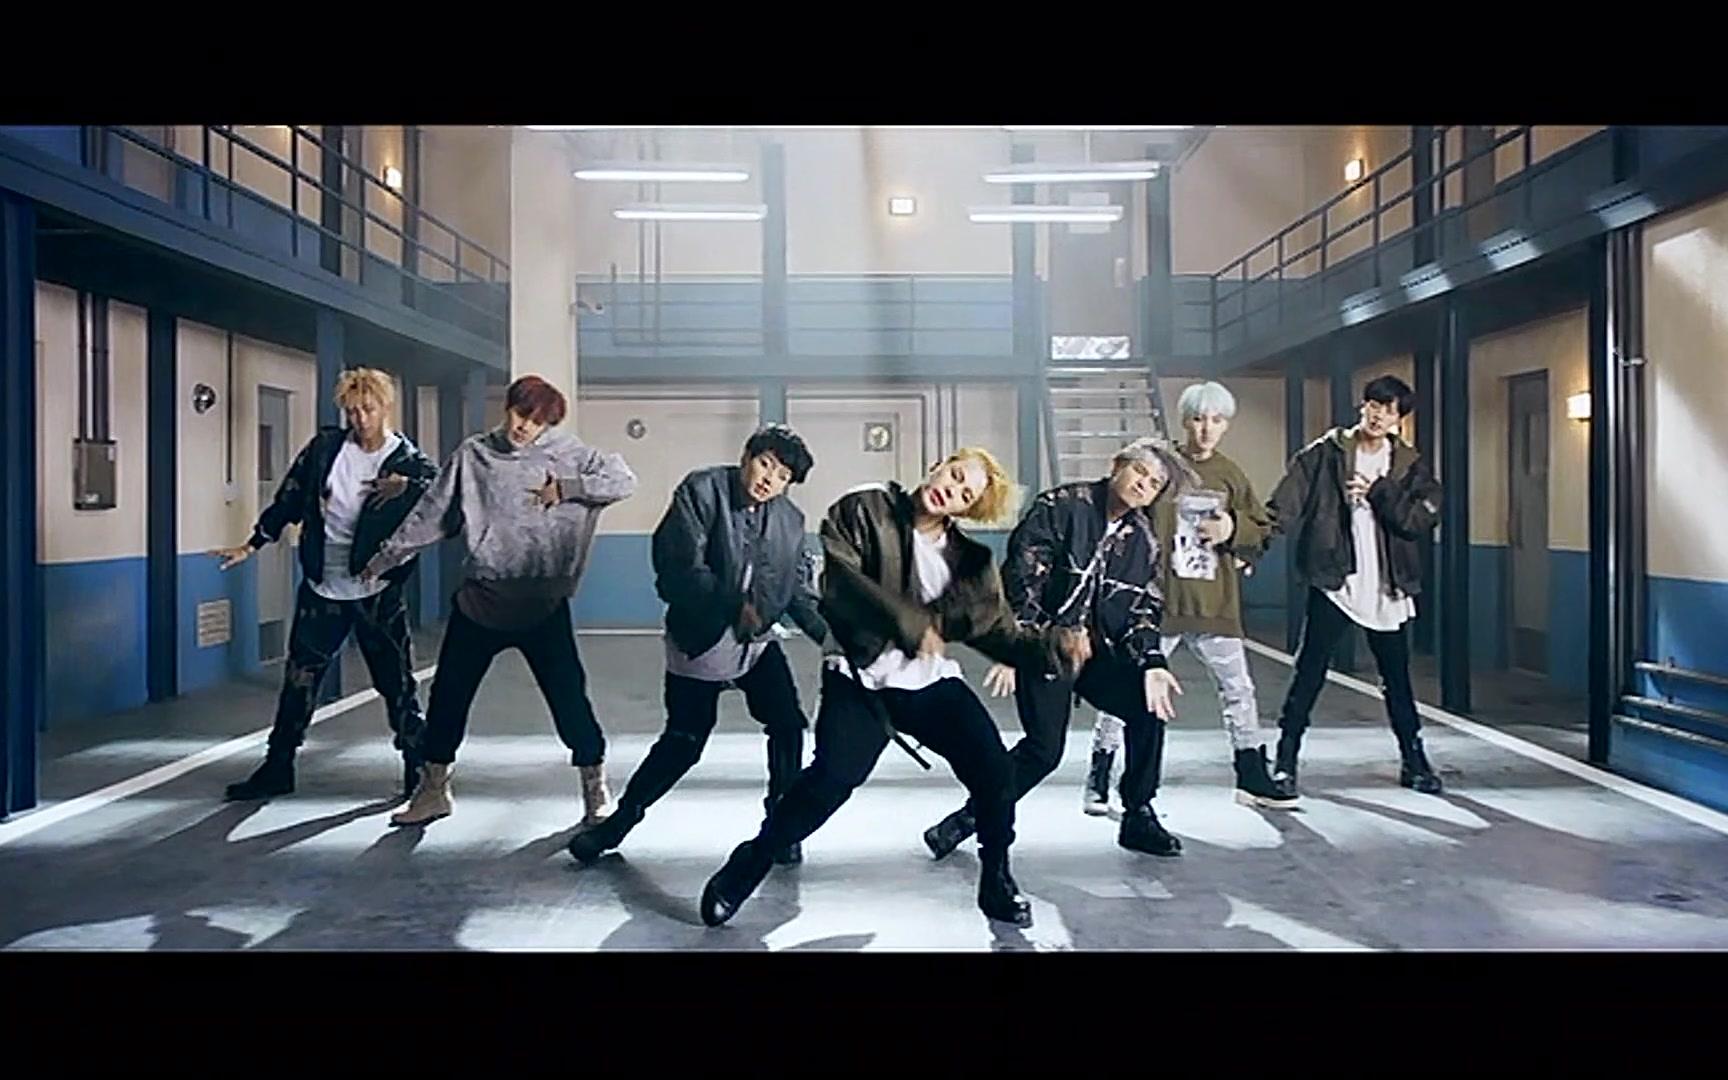 【BTS】防弹少年团 - MIC Drop 舞蹈版